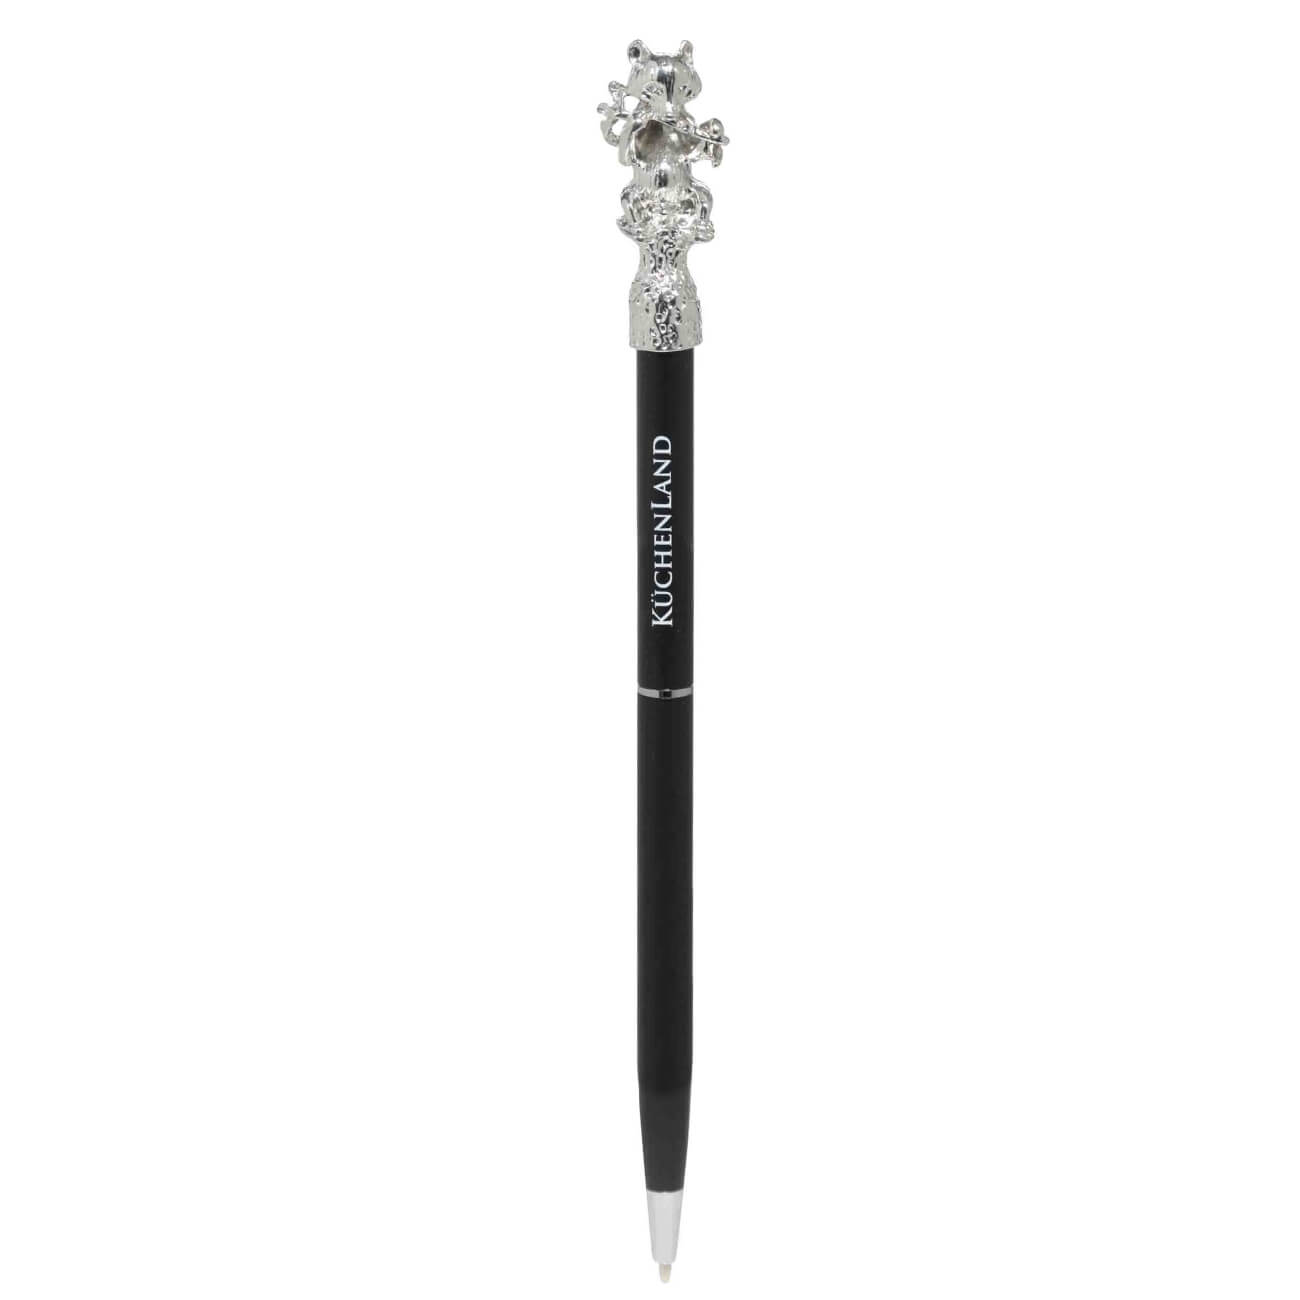 Ручка шариковая, 16 см, с фигуркой, сталь, черная, Панда, Draw figure ручка шариковая brauberg model xl original черная 12 шт 0 7 мм 880404